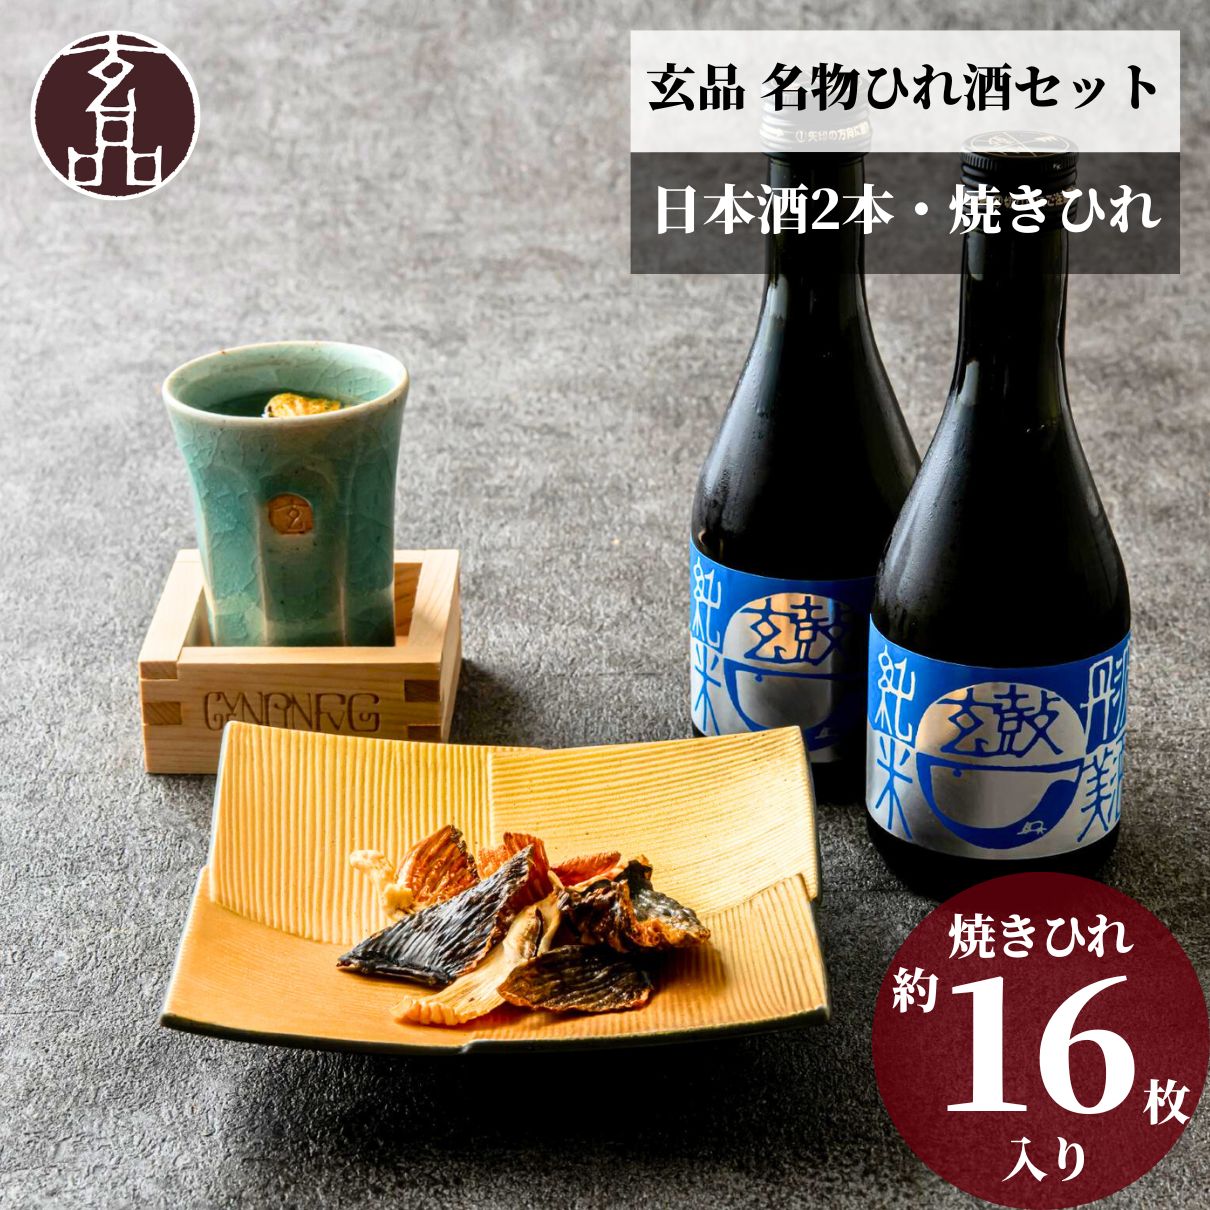 【お中元】一酔至福 焼きヒレと日本酒セット